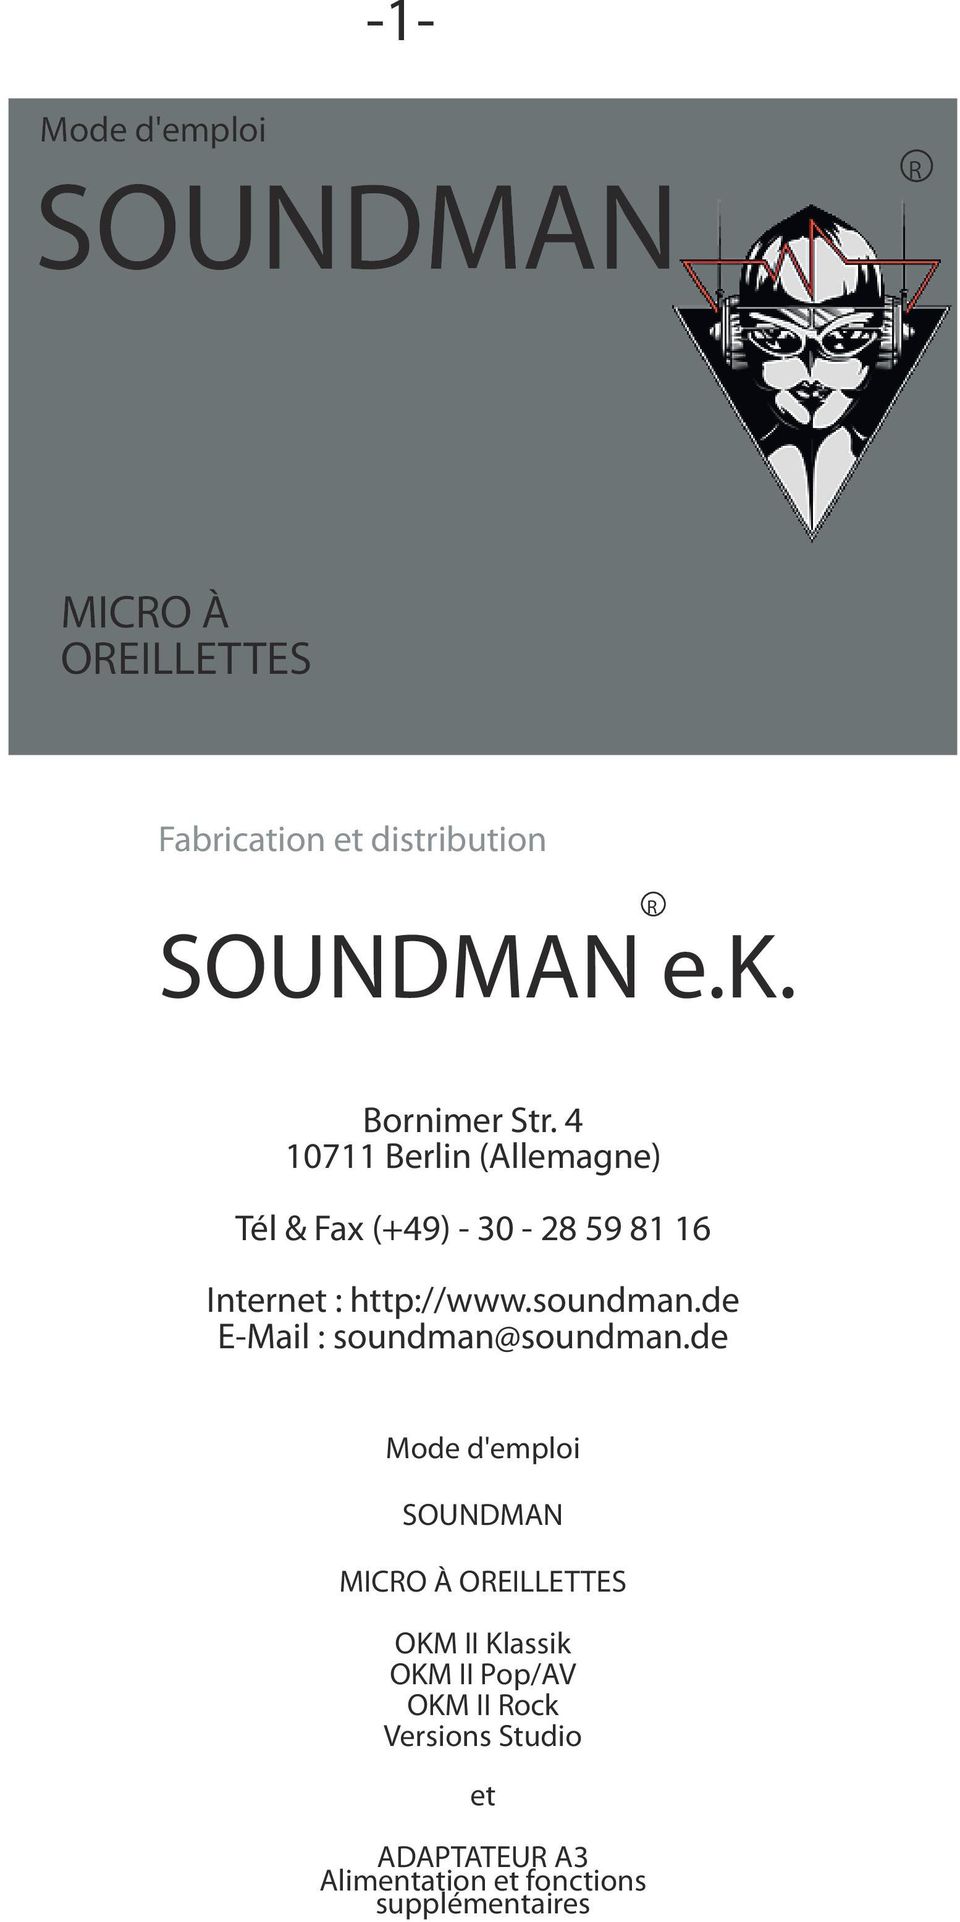 soundman.de E-Mail : soundman@soundman.